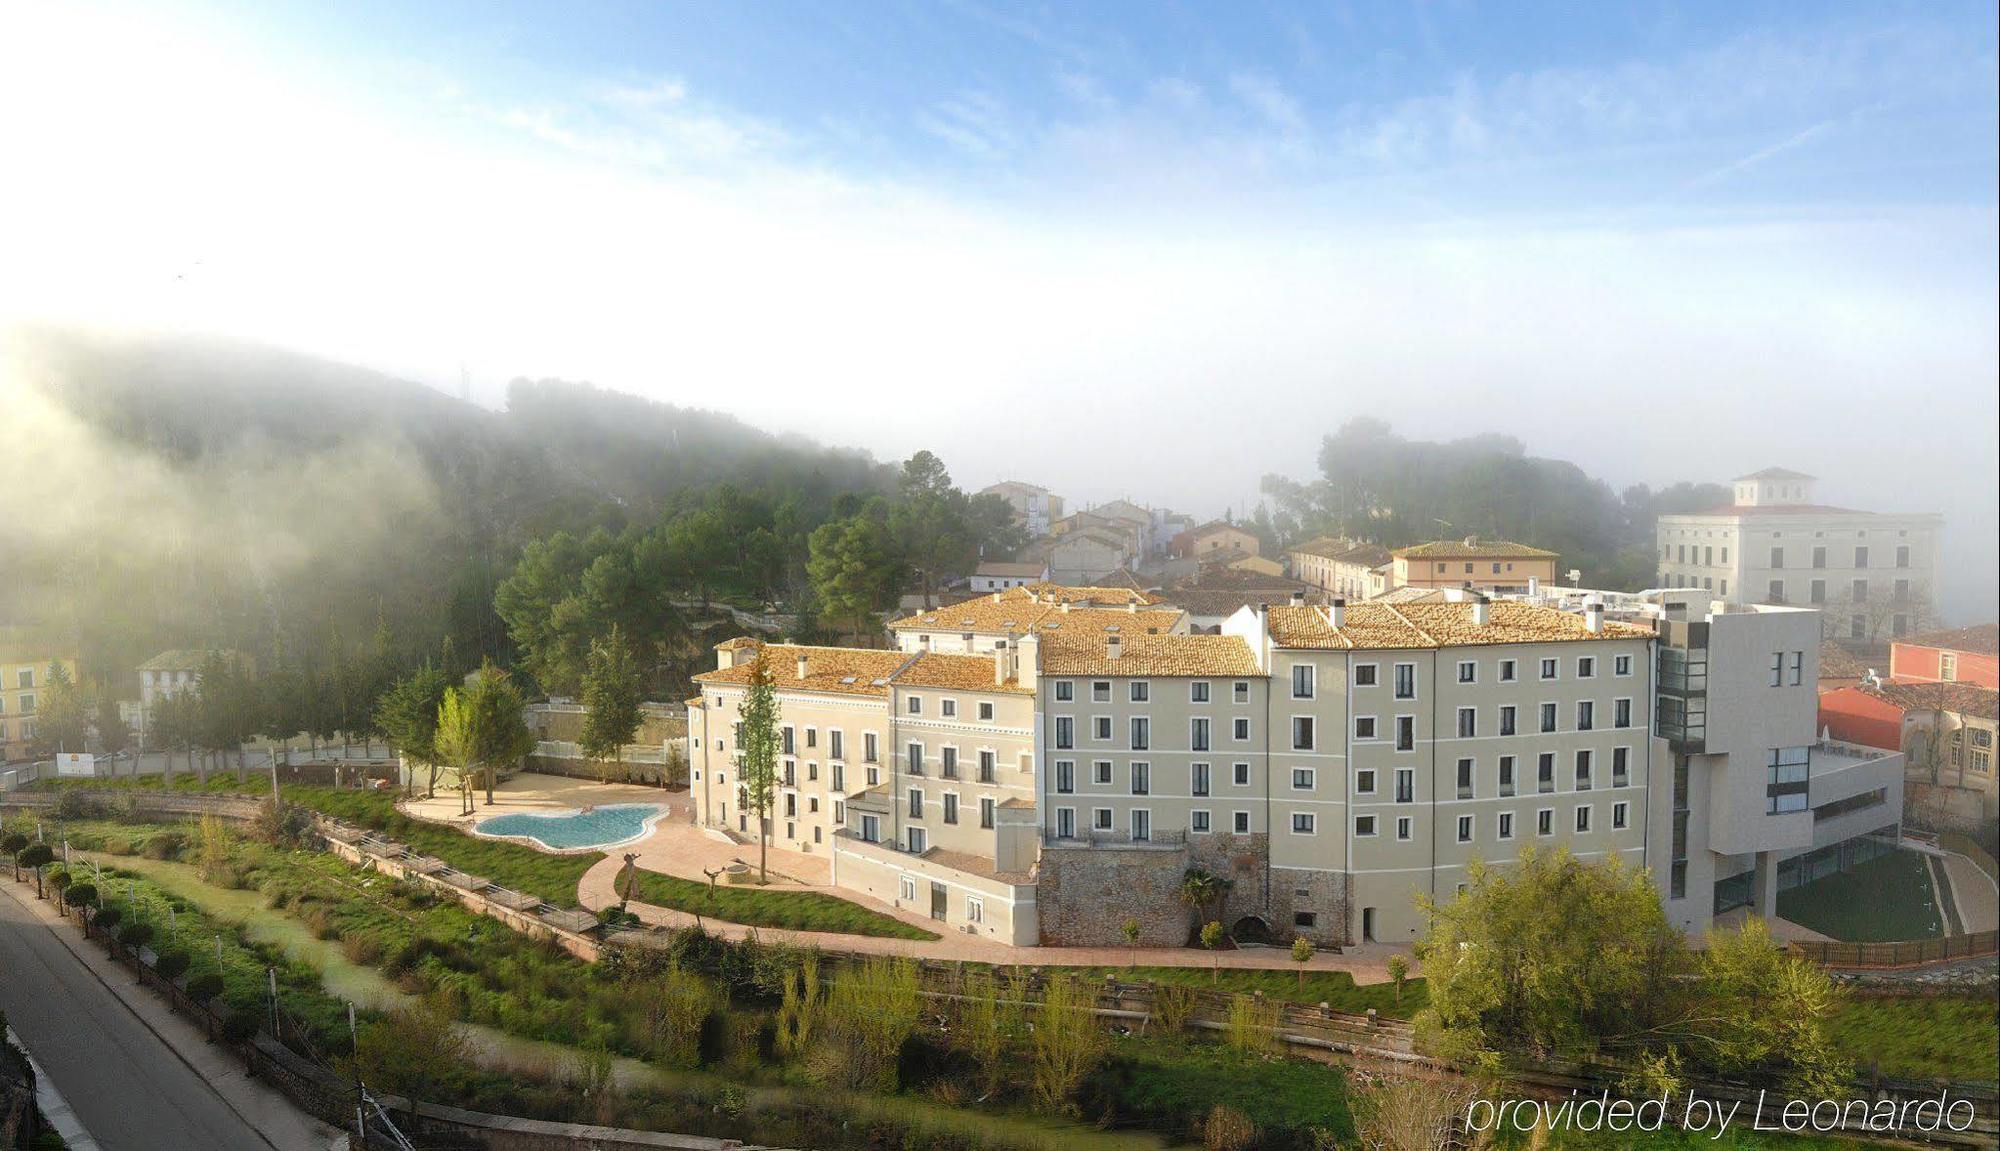 Hotel Balneario Alhama de Aragón Exteriör bild